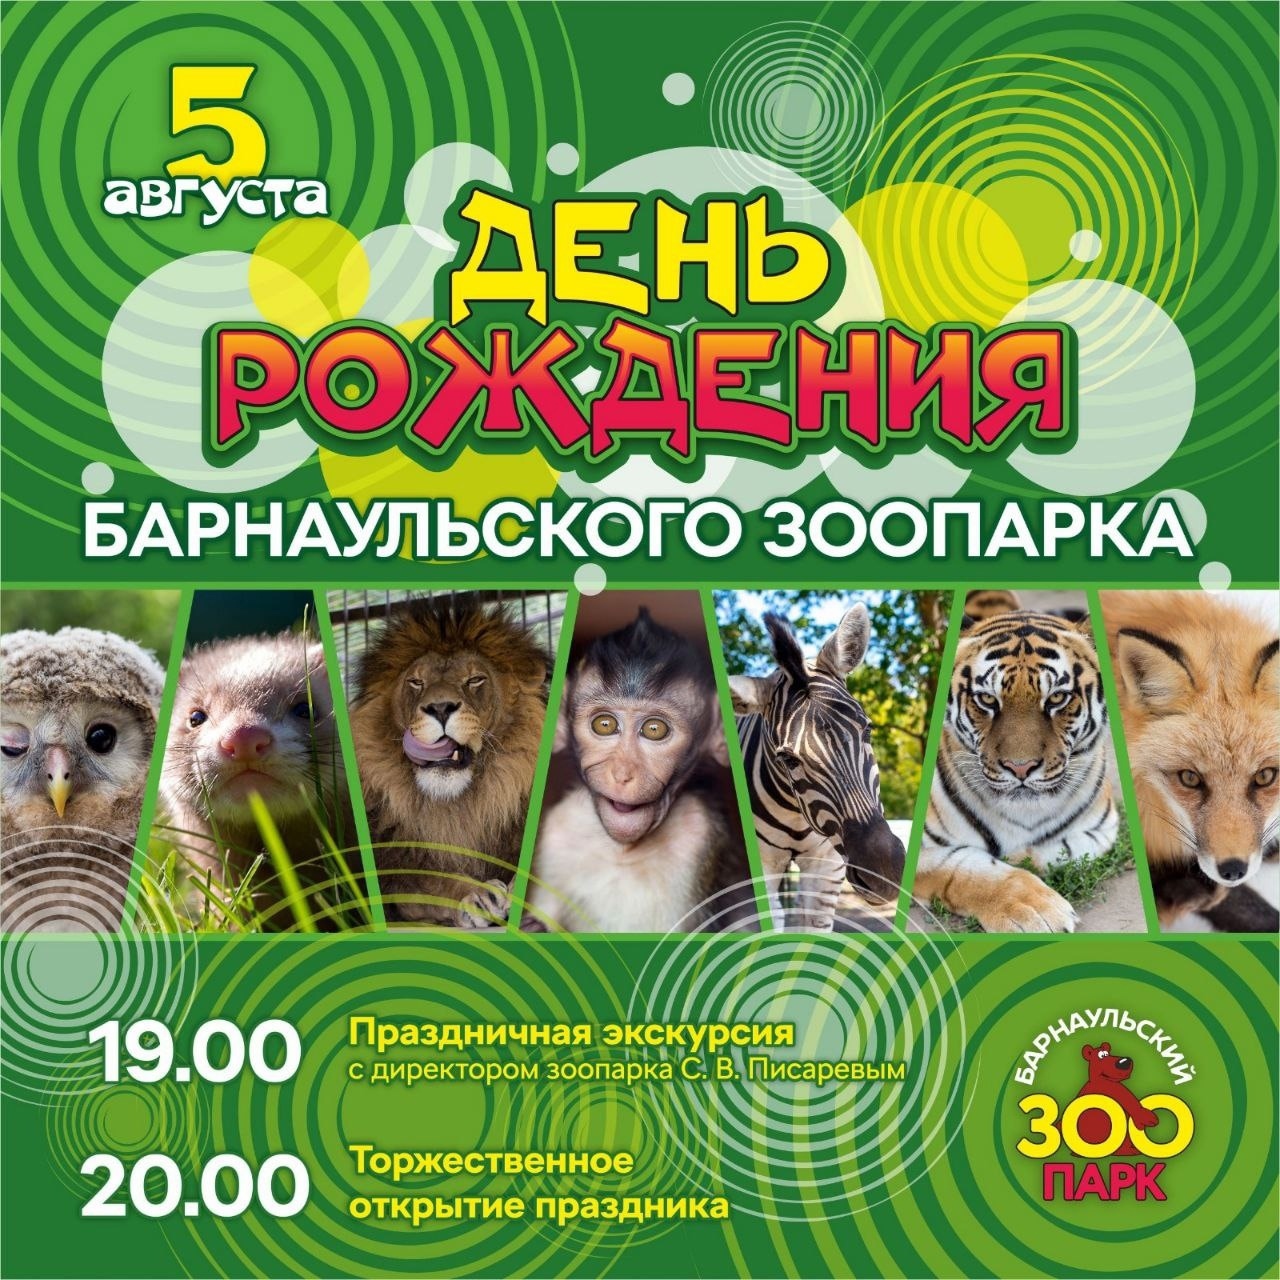 Программа празднования дня рождения зоопарка